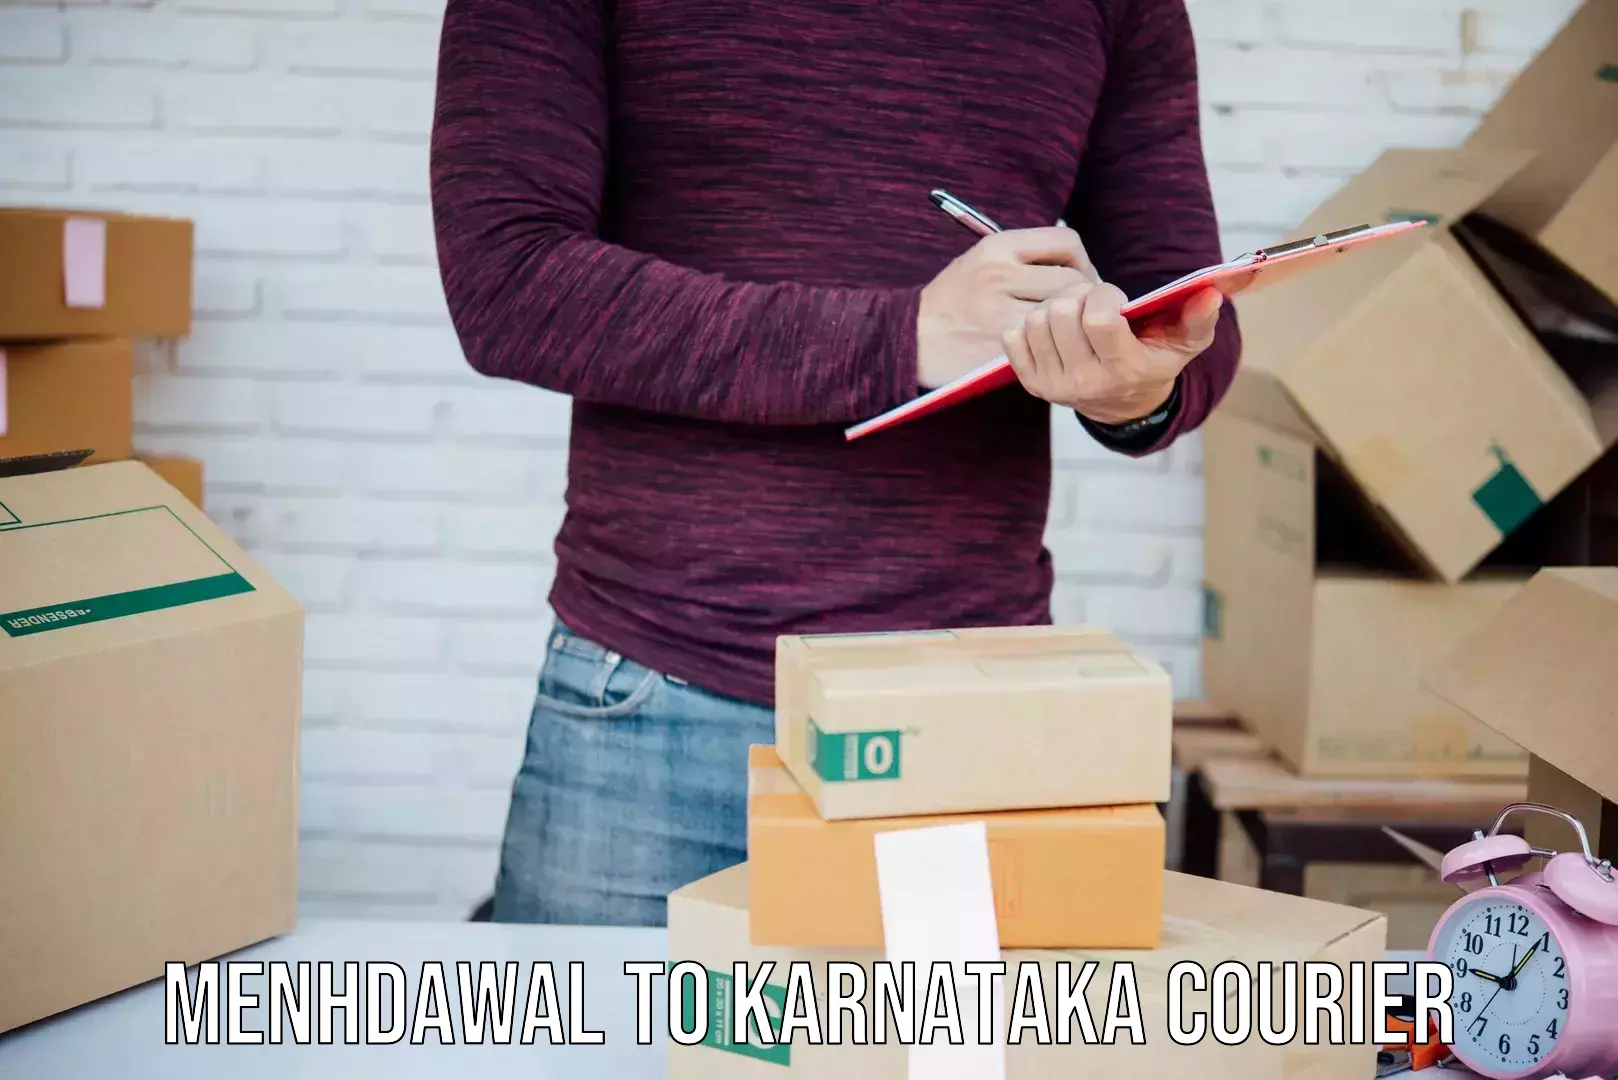 Efficient parcel tracking Menhdawal to Karnataka